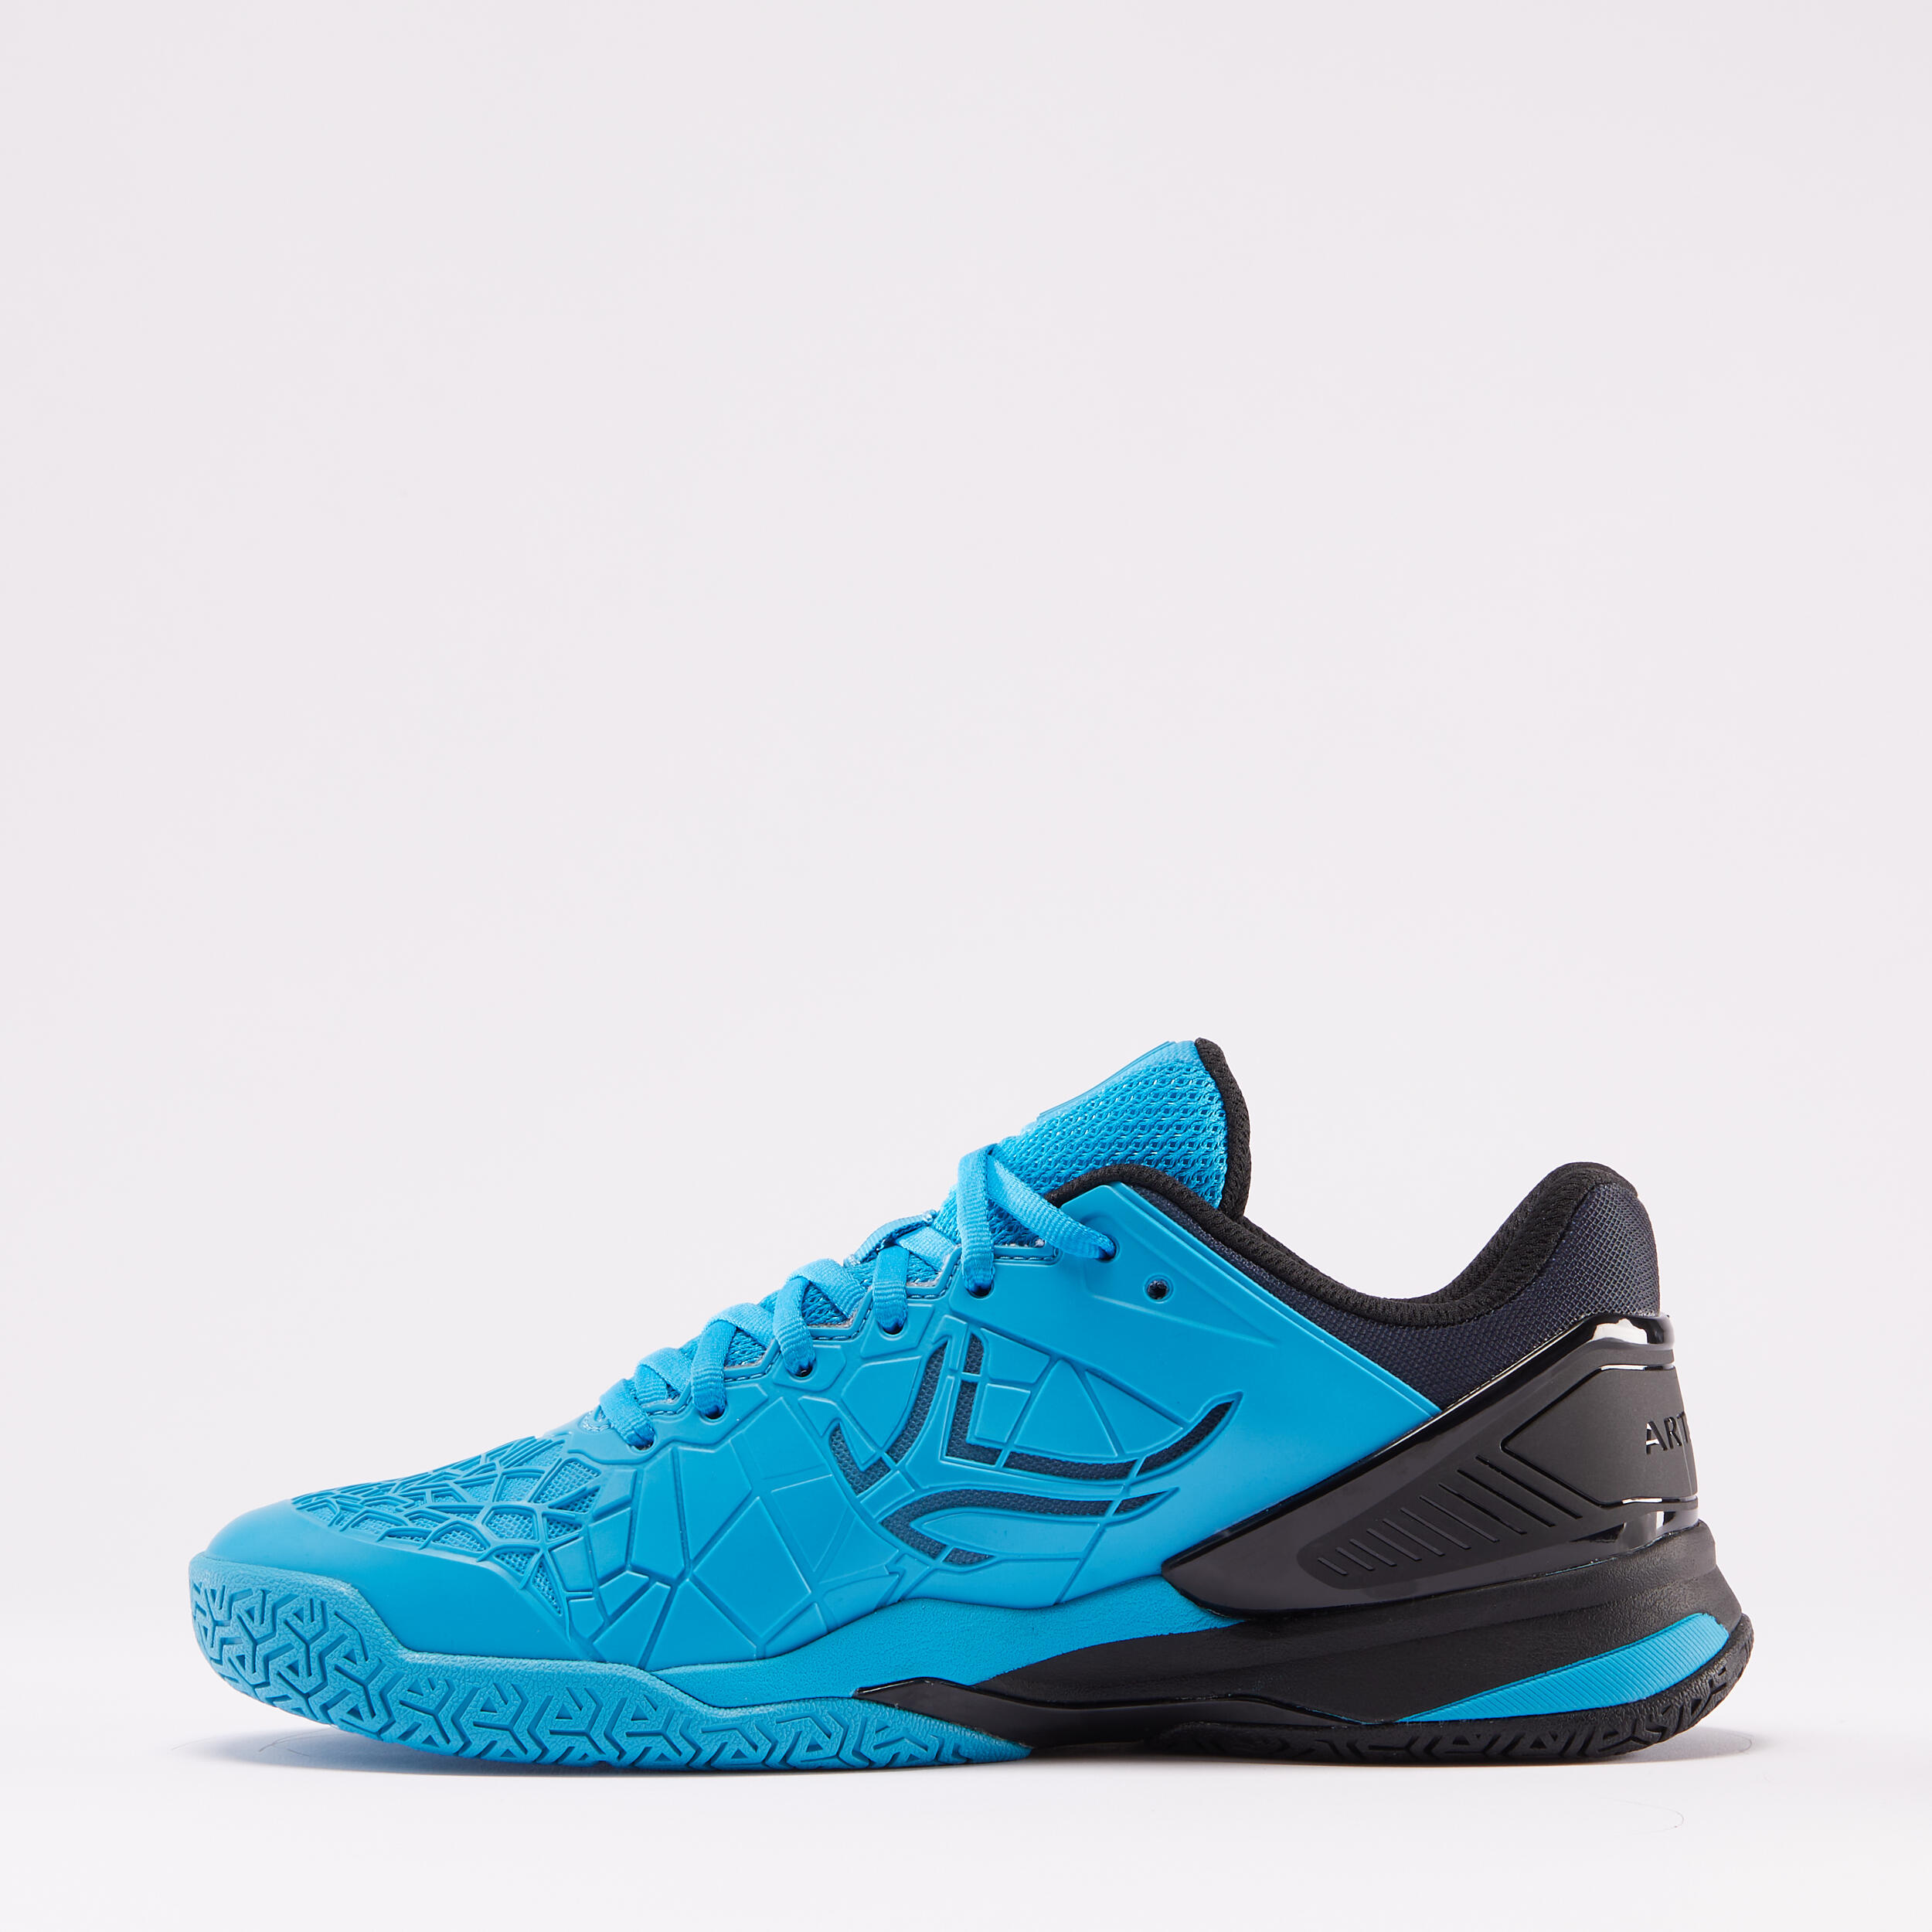 Men's Multicourt Tennis Shoes - Strong Pro Blue/Black - ARTENGO